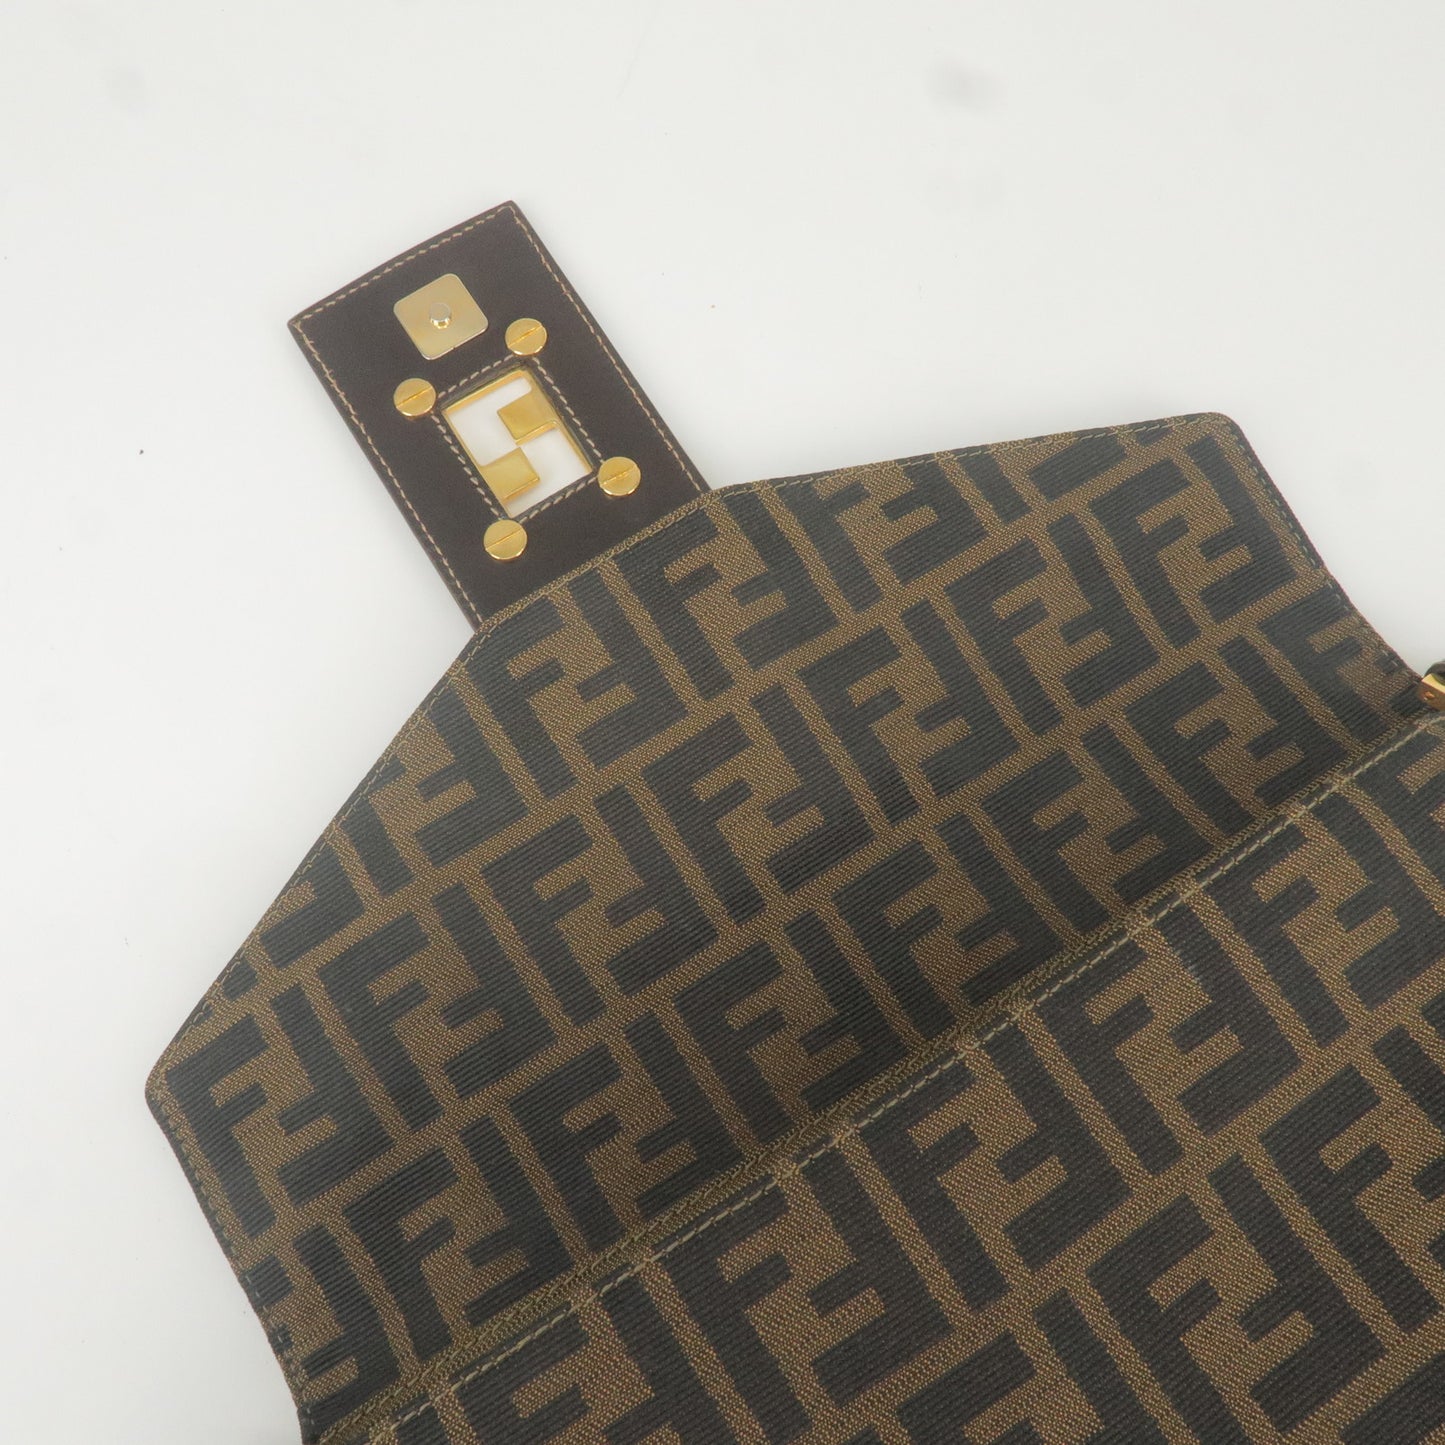 FENDI Zucca Canvas Leather Shoulder Bag Brown Black 26434